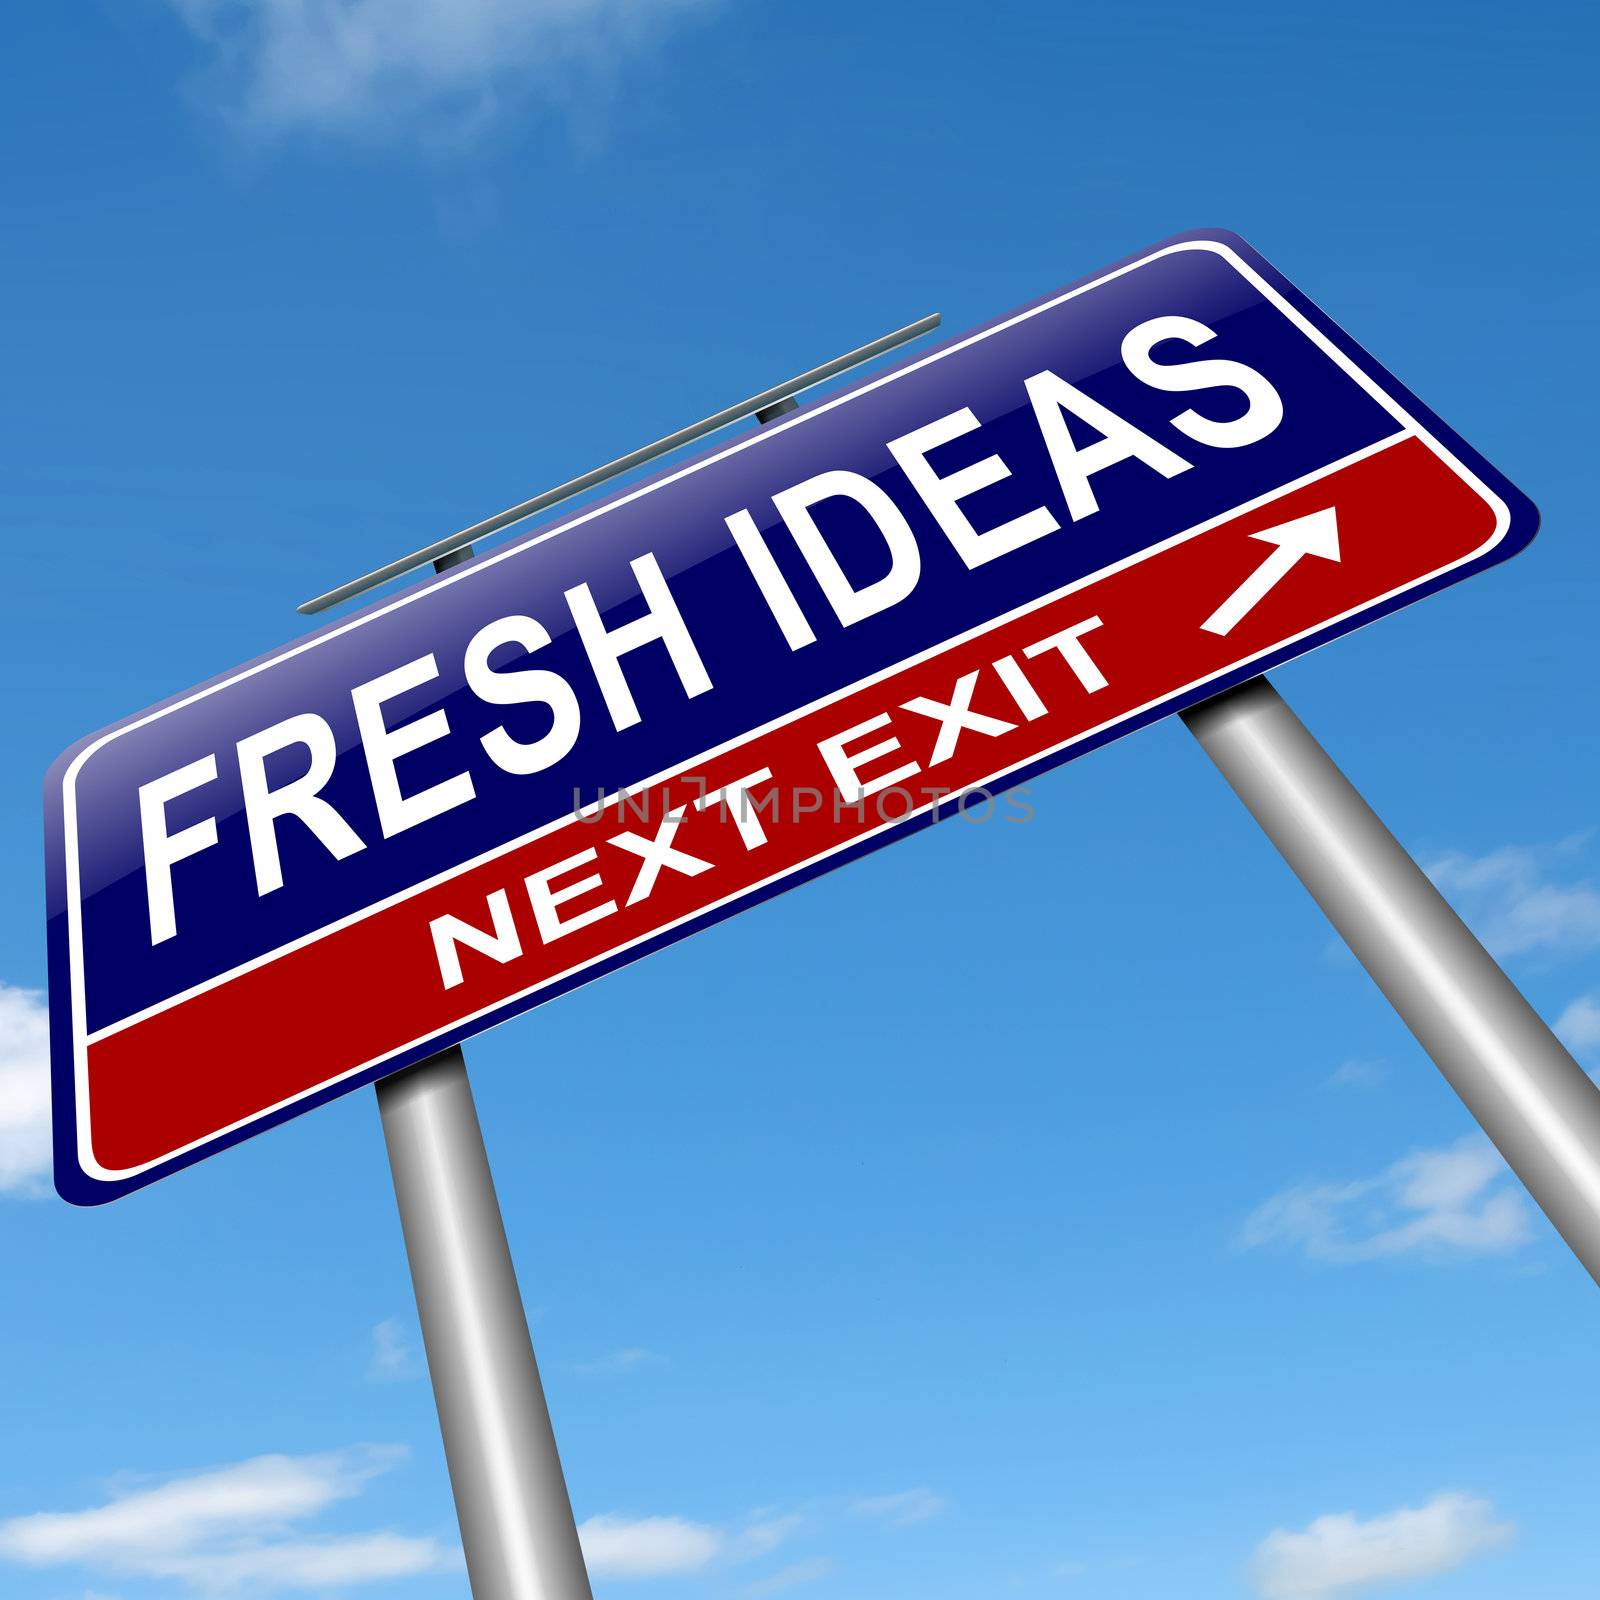 Fresh ideas. by 72soul